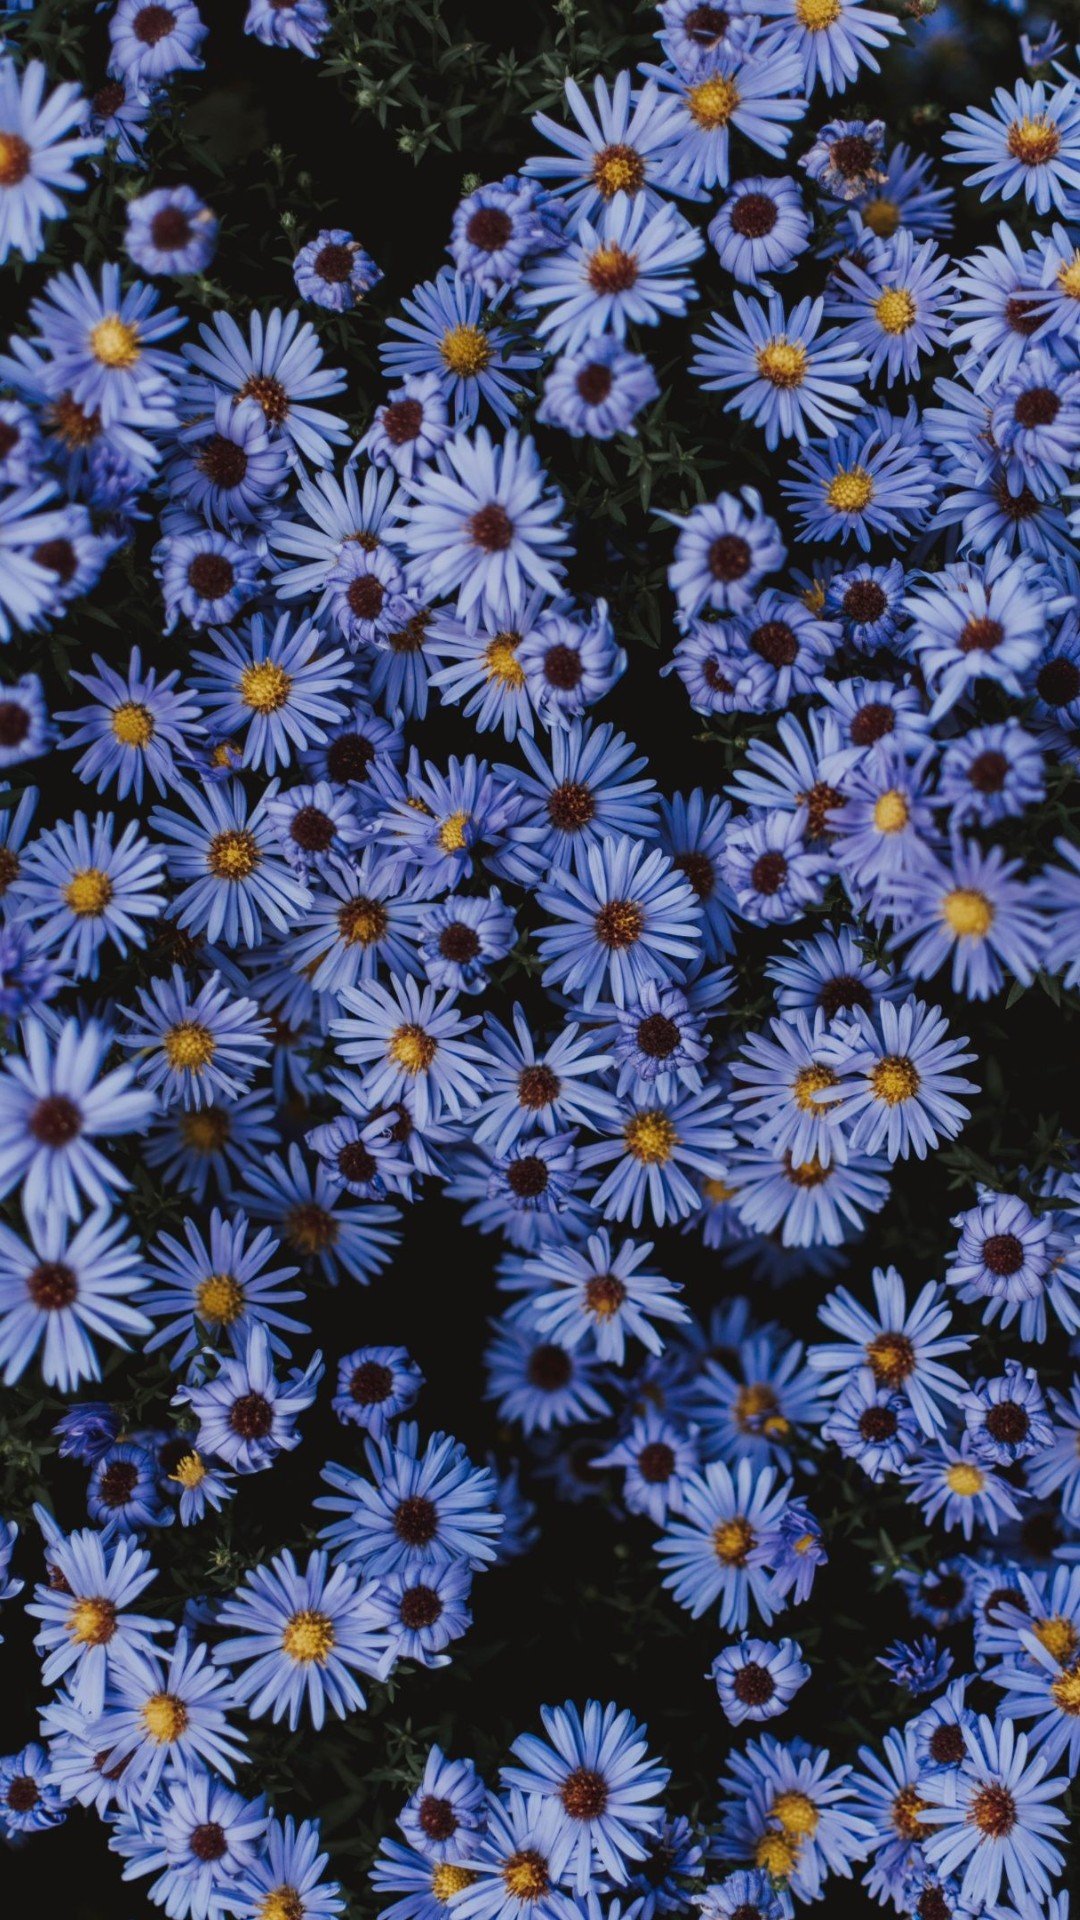 Aesthetic Flower Wallpaper